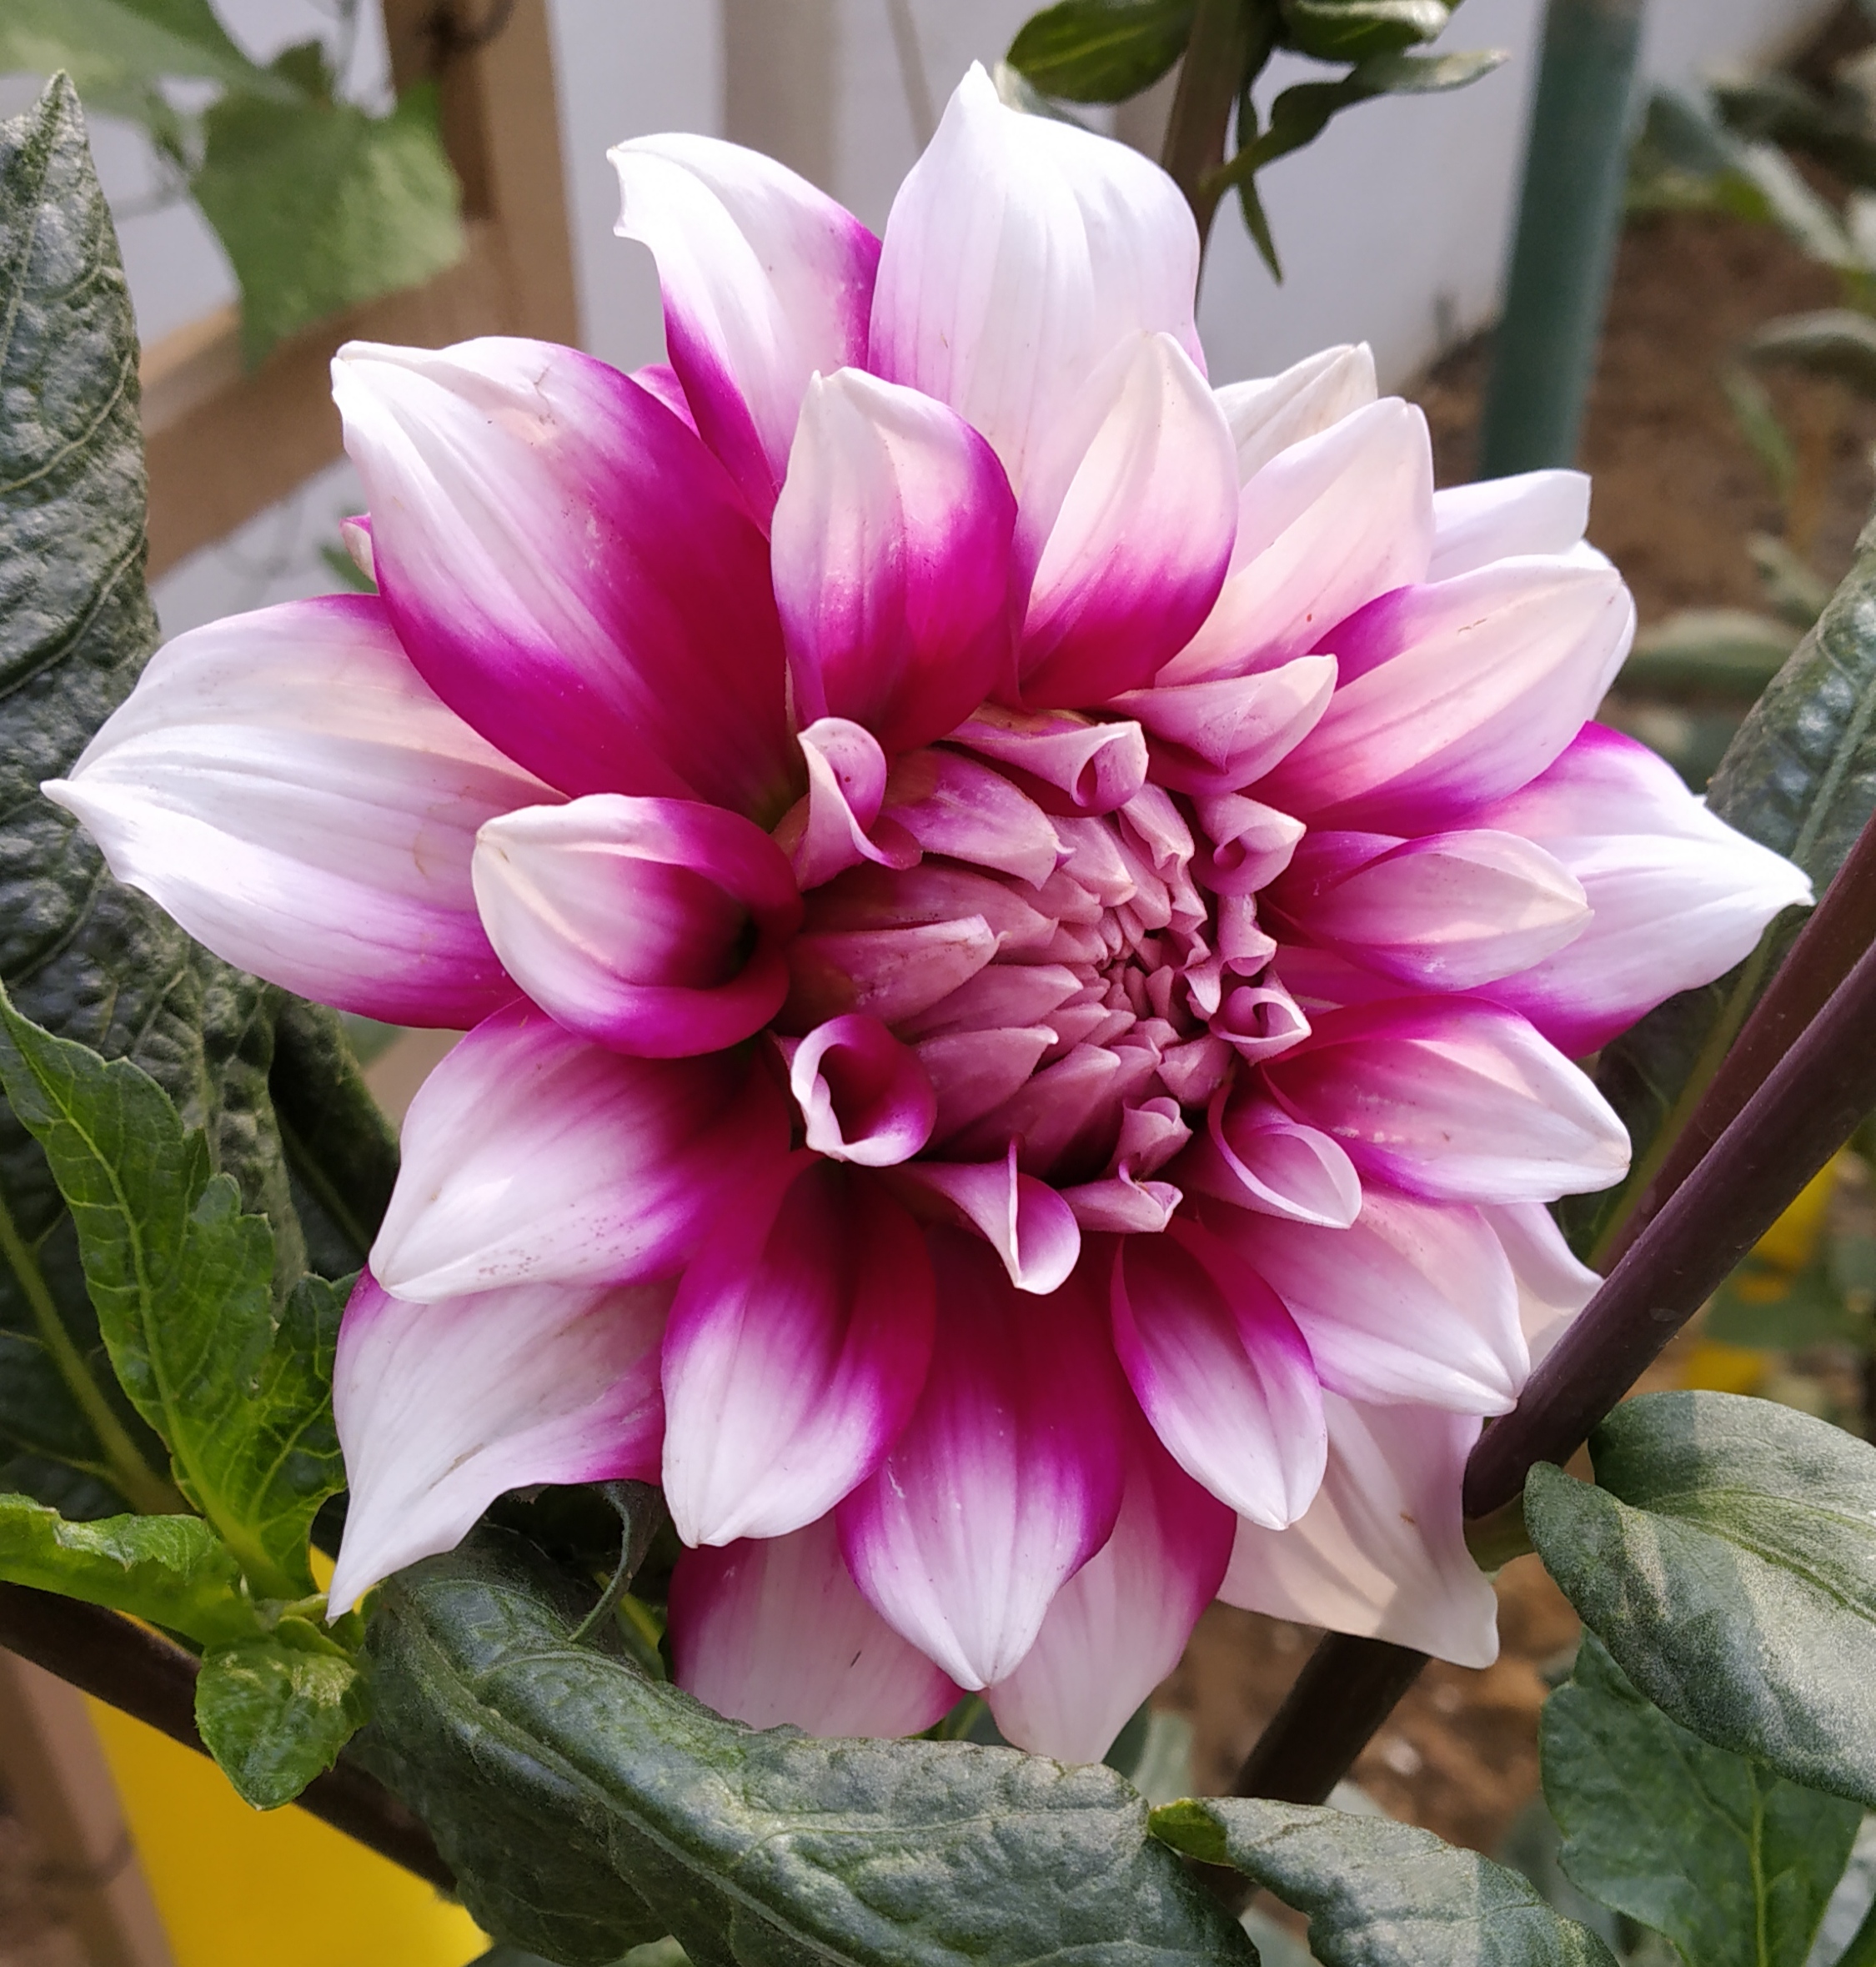 Daheliya flower